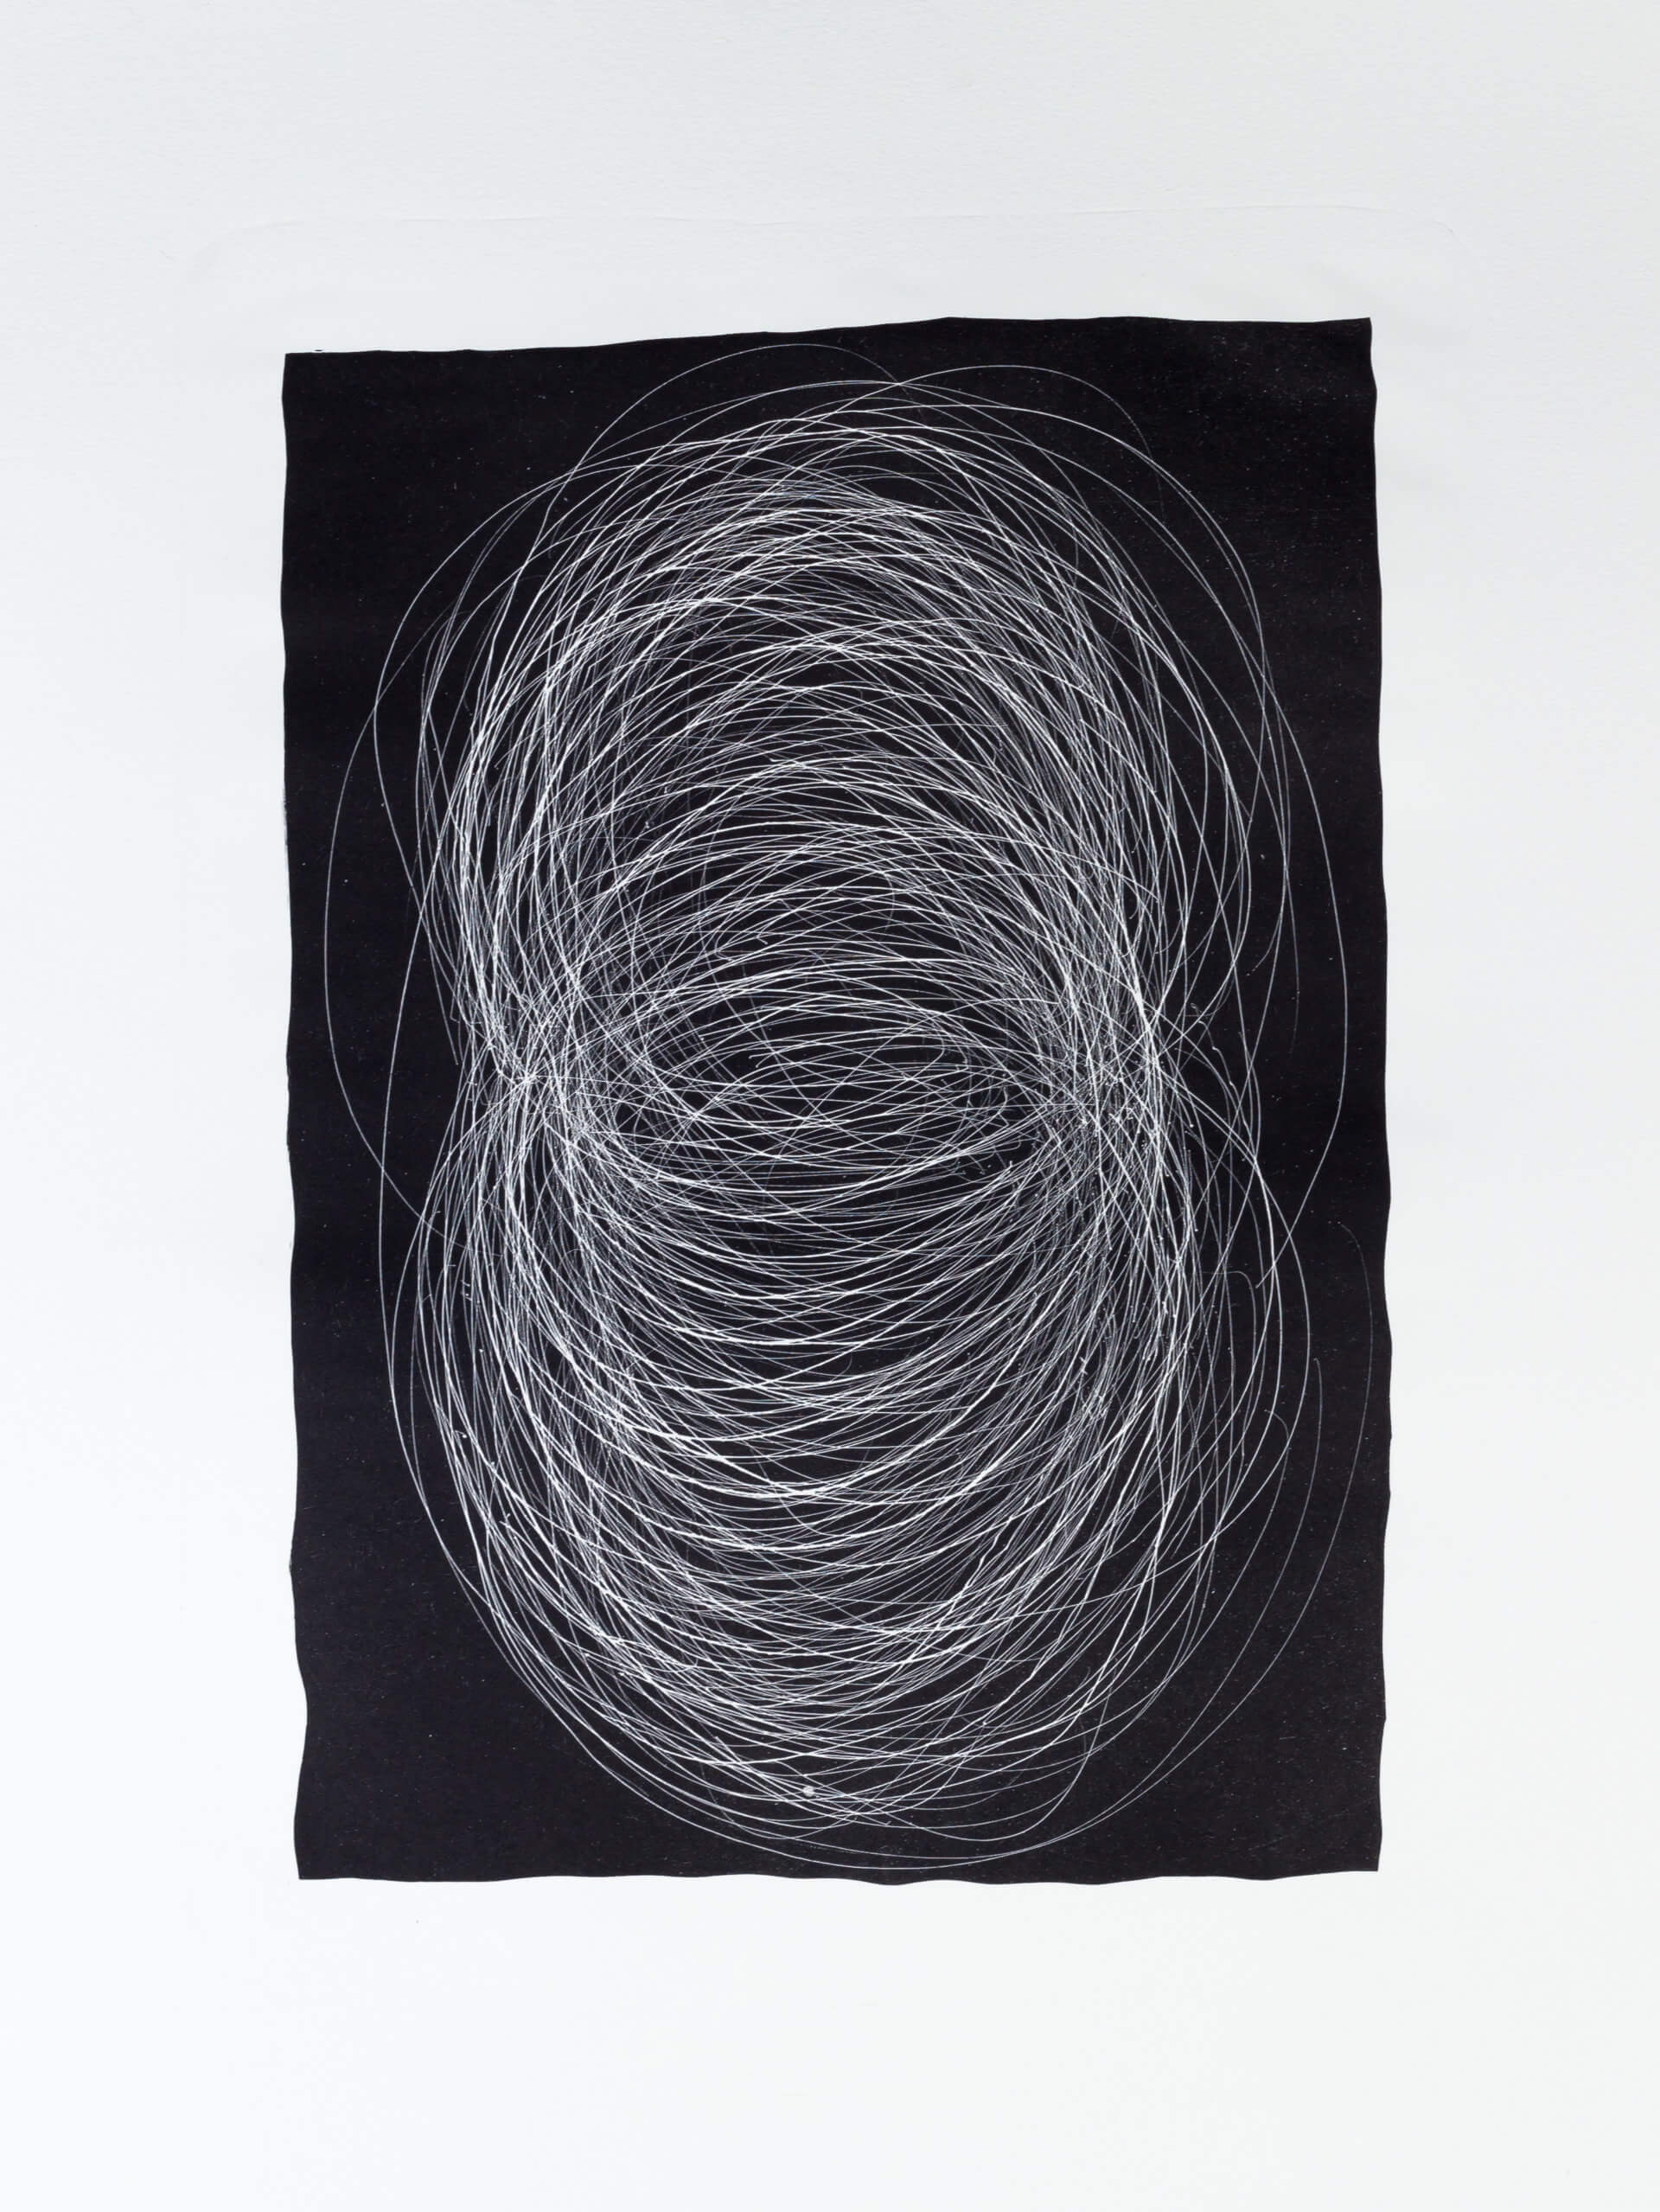 Katharina Albers, Transformation II, 2011, Schablithographie, 4 Auflagen, 40x29,5cm